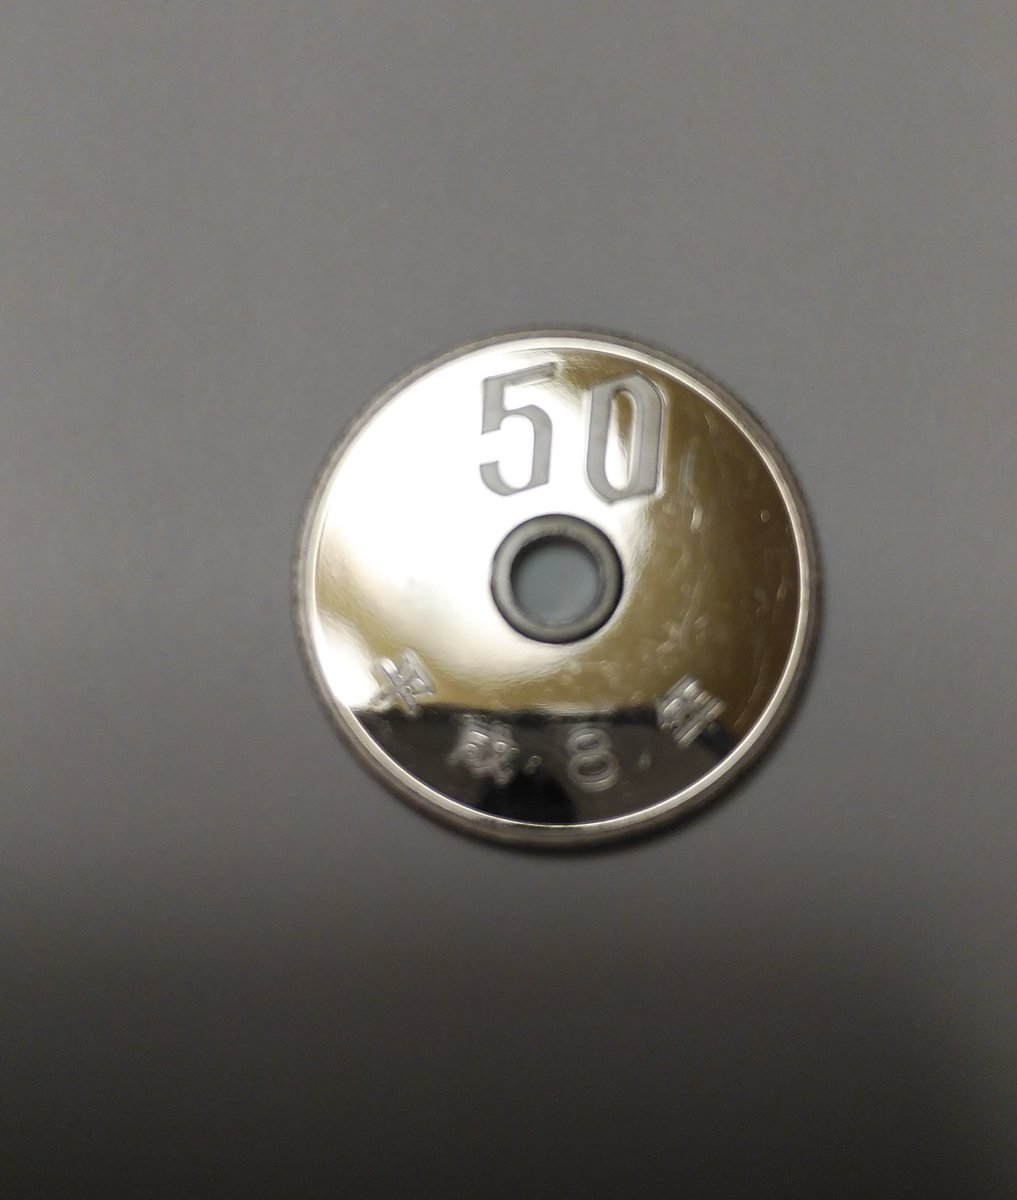 ぴろりん 私の持っている50円玉がちょっと変なんだけど 変じゃない エラーコイン 50円玉 T Co Amaplq01f4 Twitter